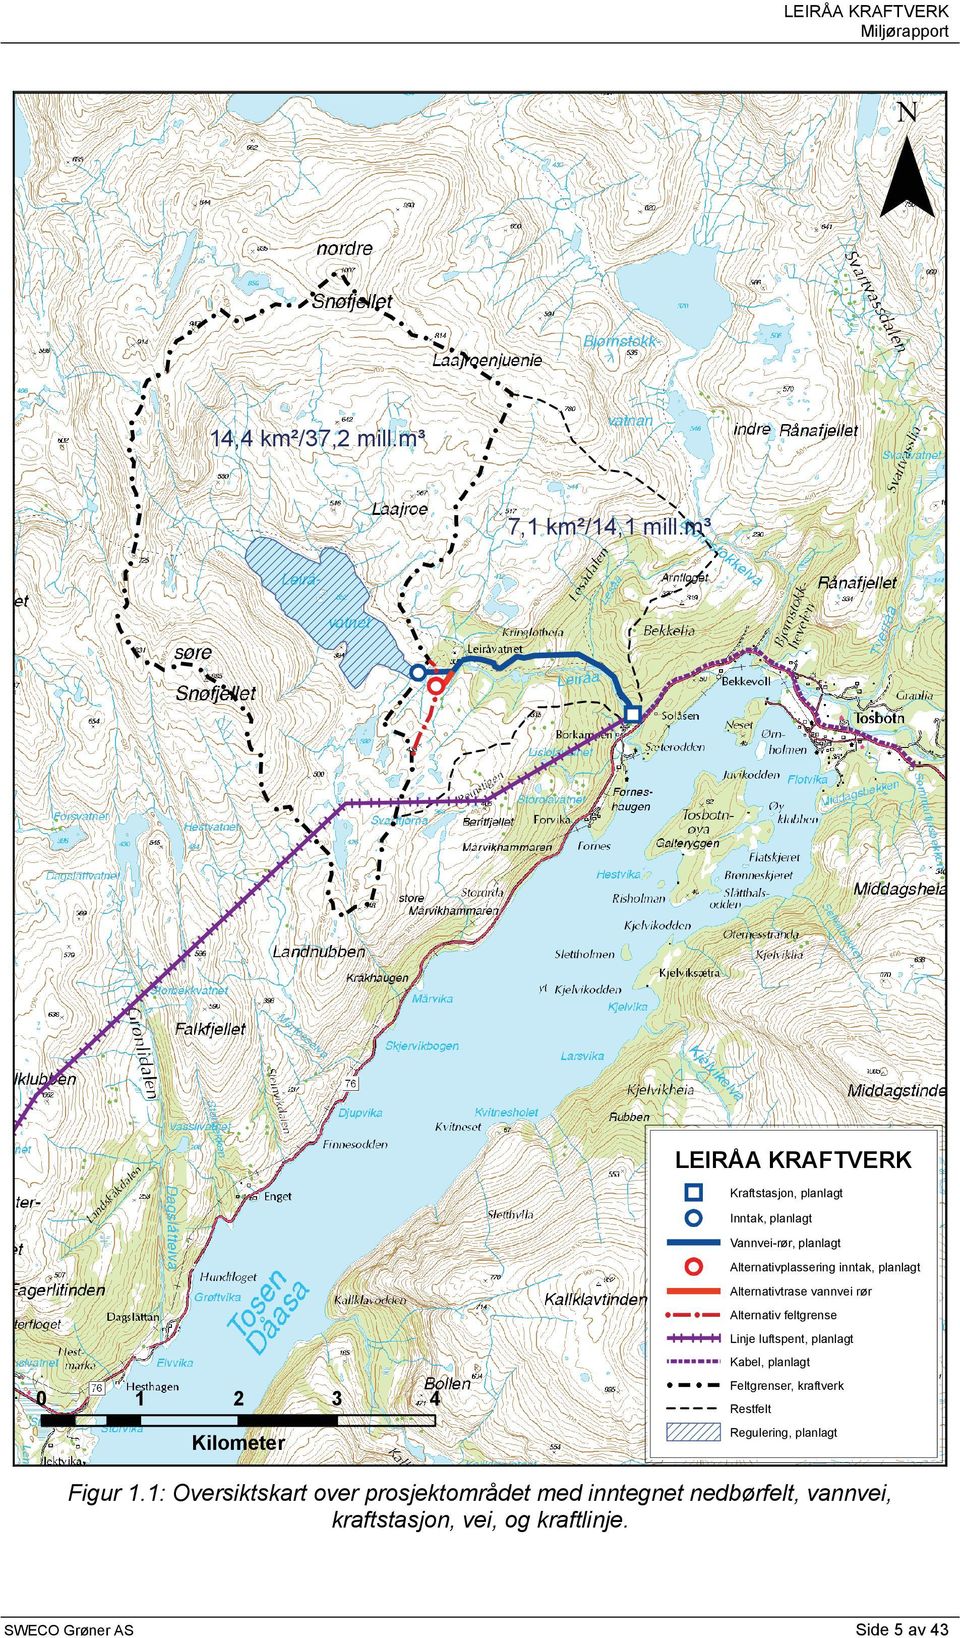 planlagt Alternativtrase vannvei rør Alternativ feltgrense Linje luftspent, planlagt Kabel, planlagt 0 1 2 3 4